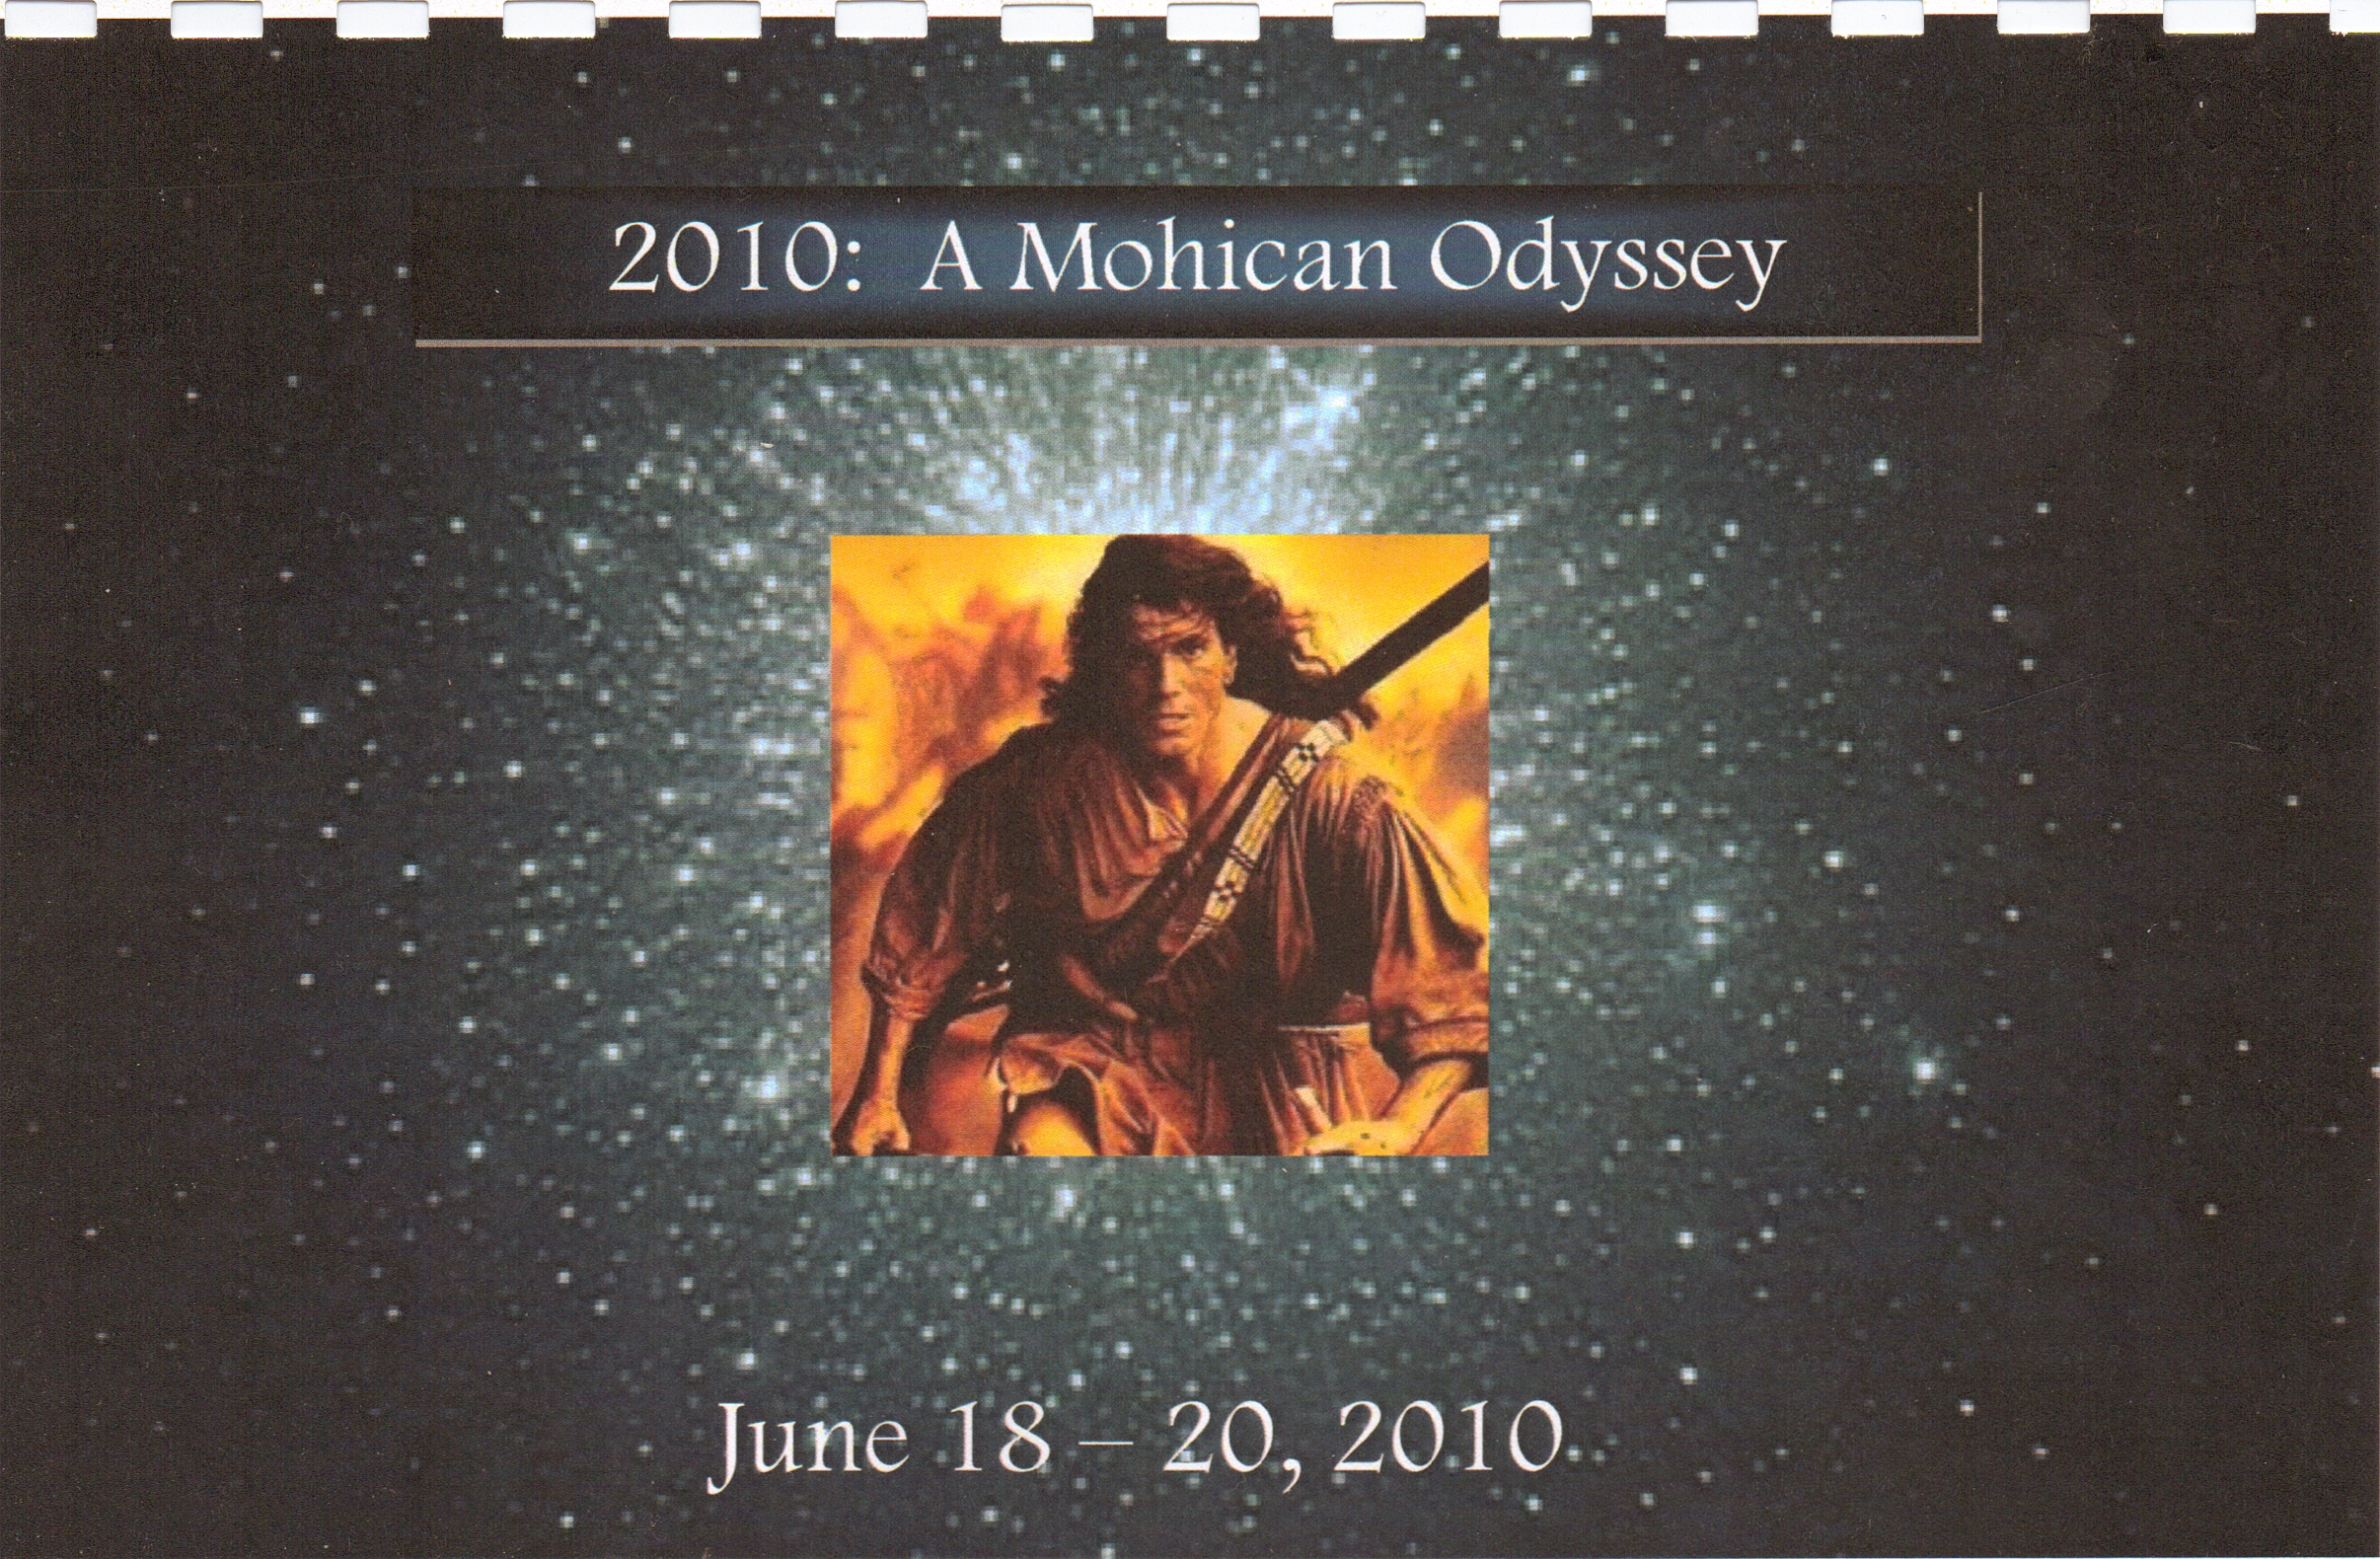 2010 Program cover, designed by Sarah